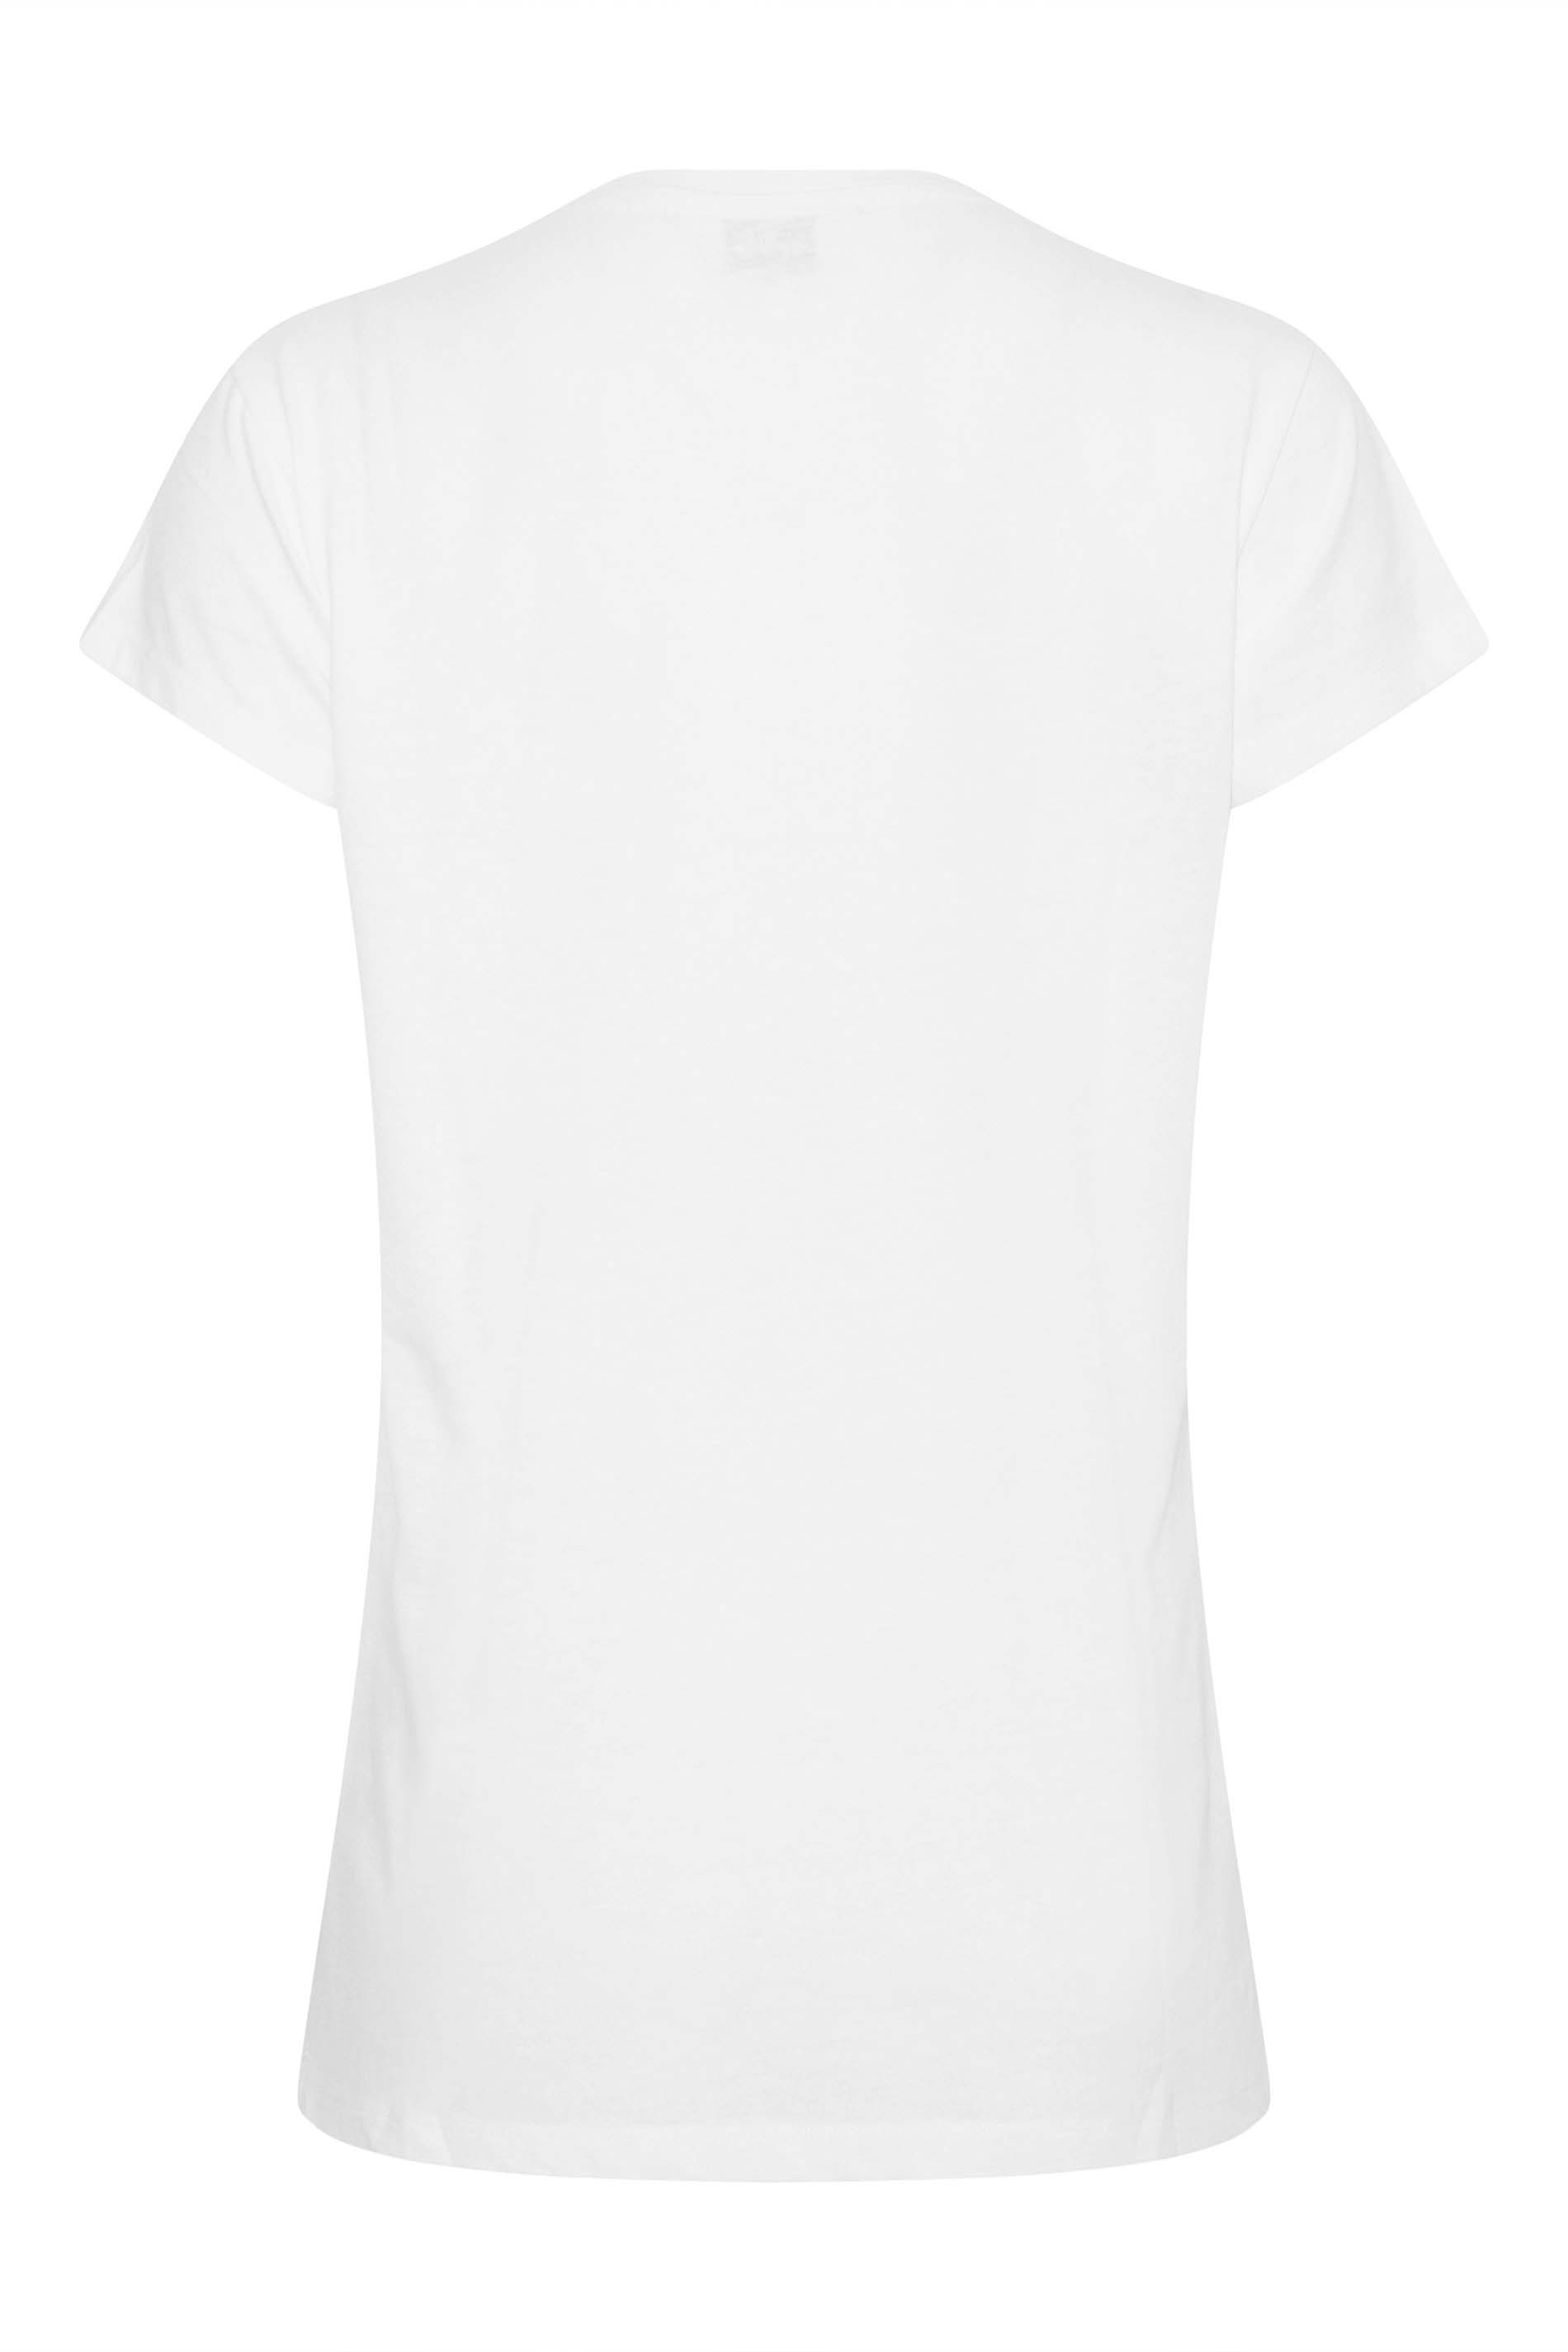 LTS 2 PACK Tall Women's Black & White T-Shirts | Long Tall Sally